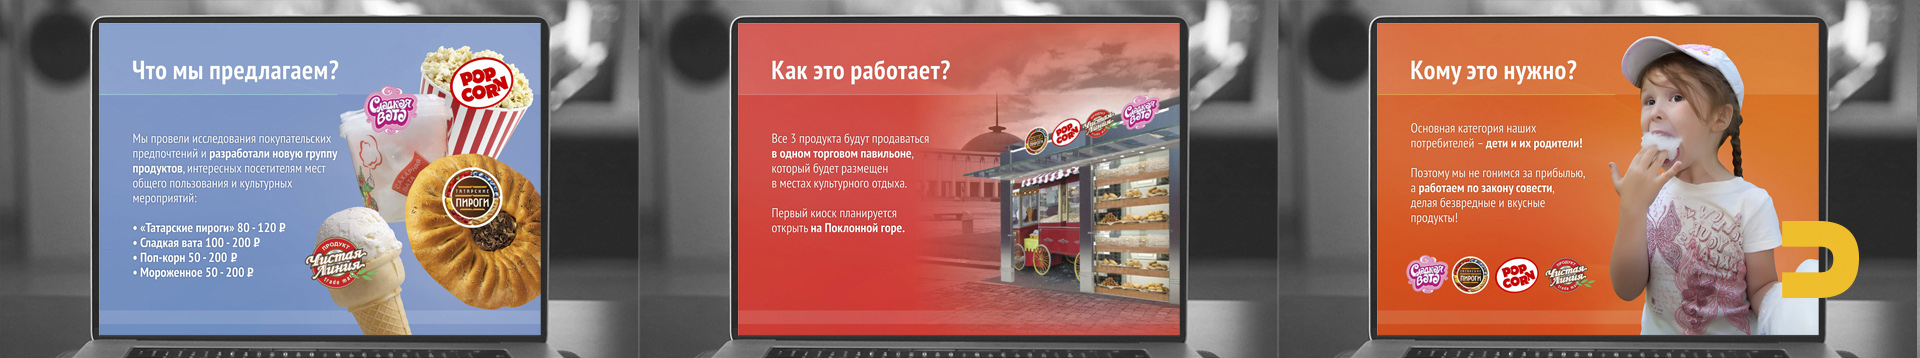 Дизайн презентации розничной продажи татарских пирогов